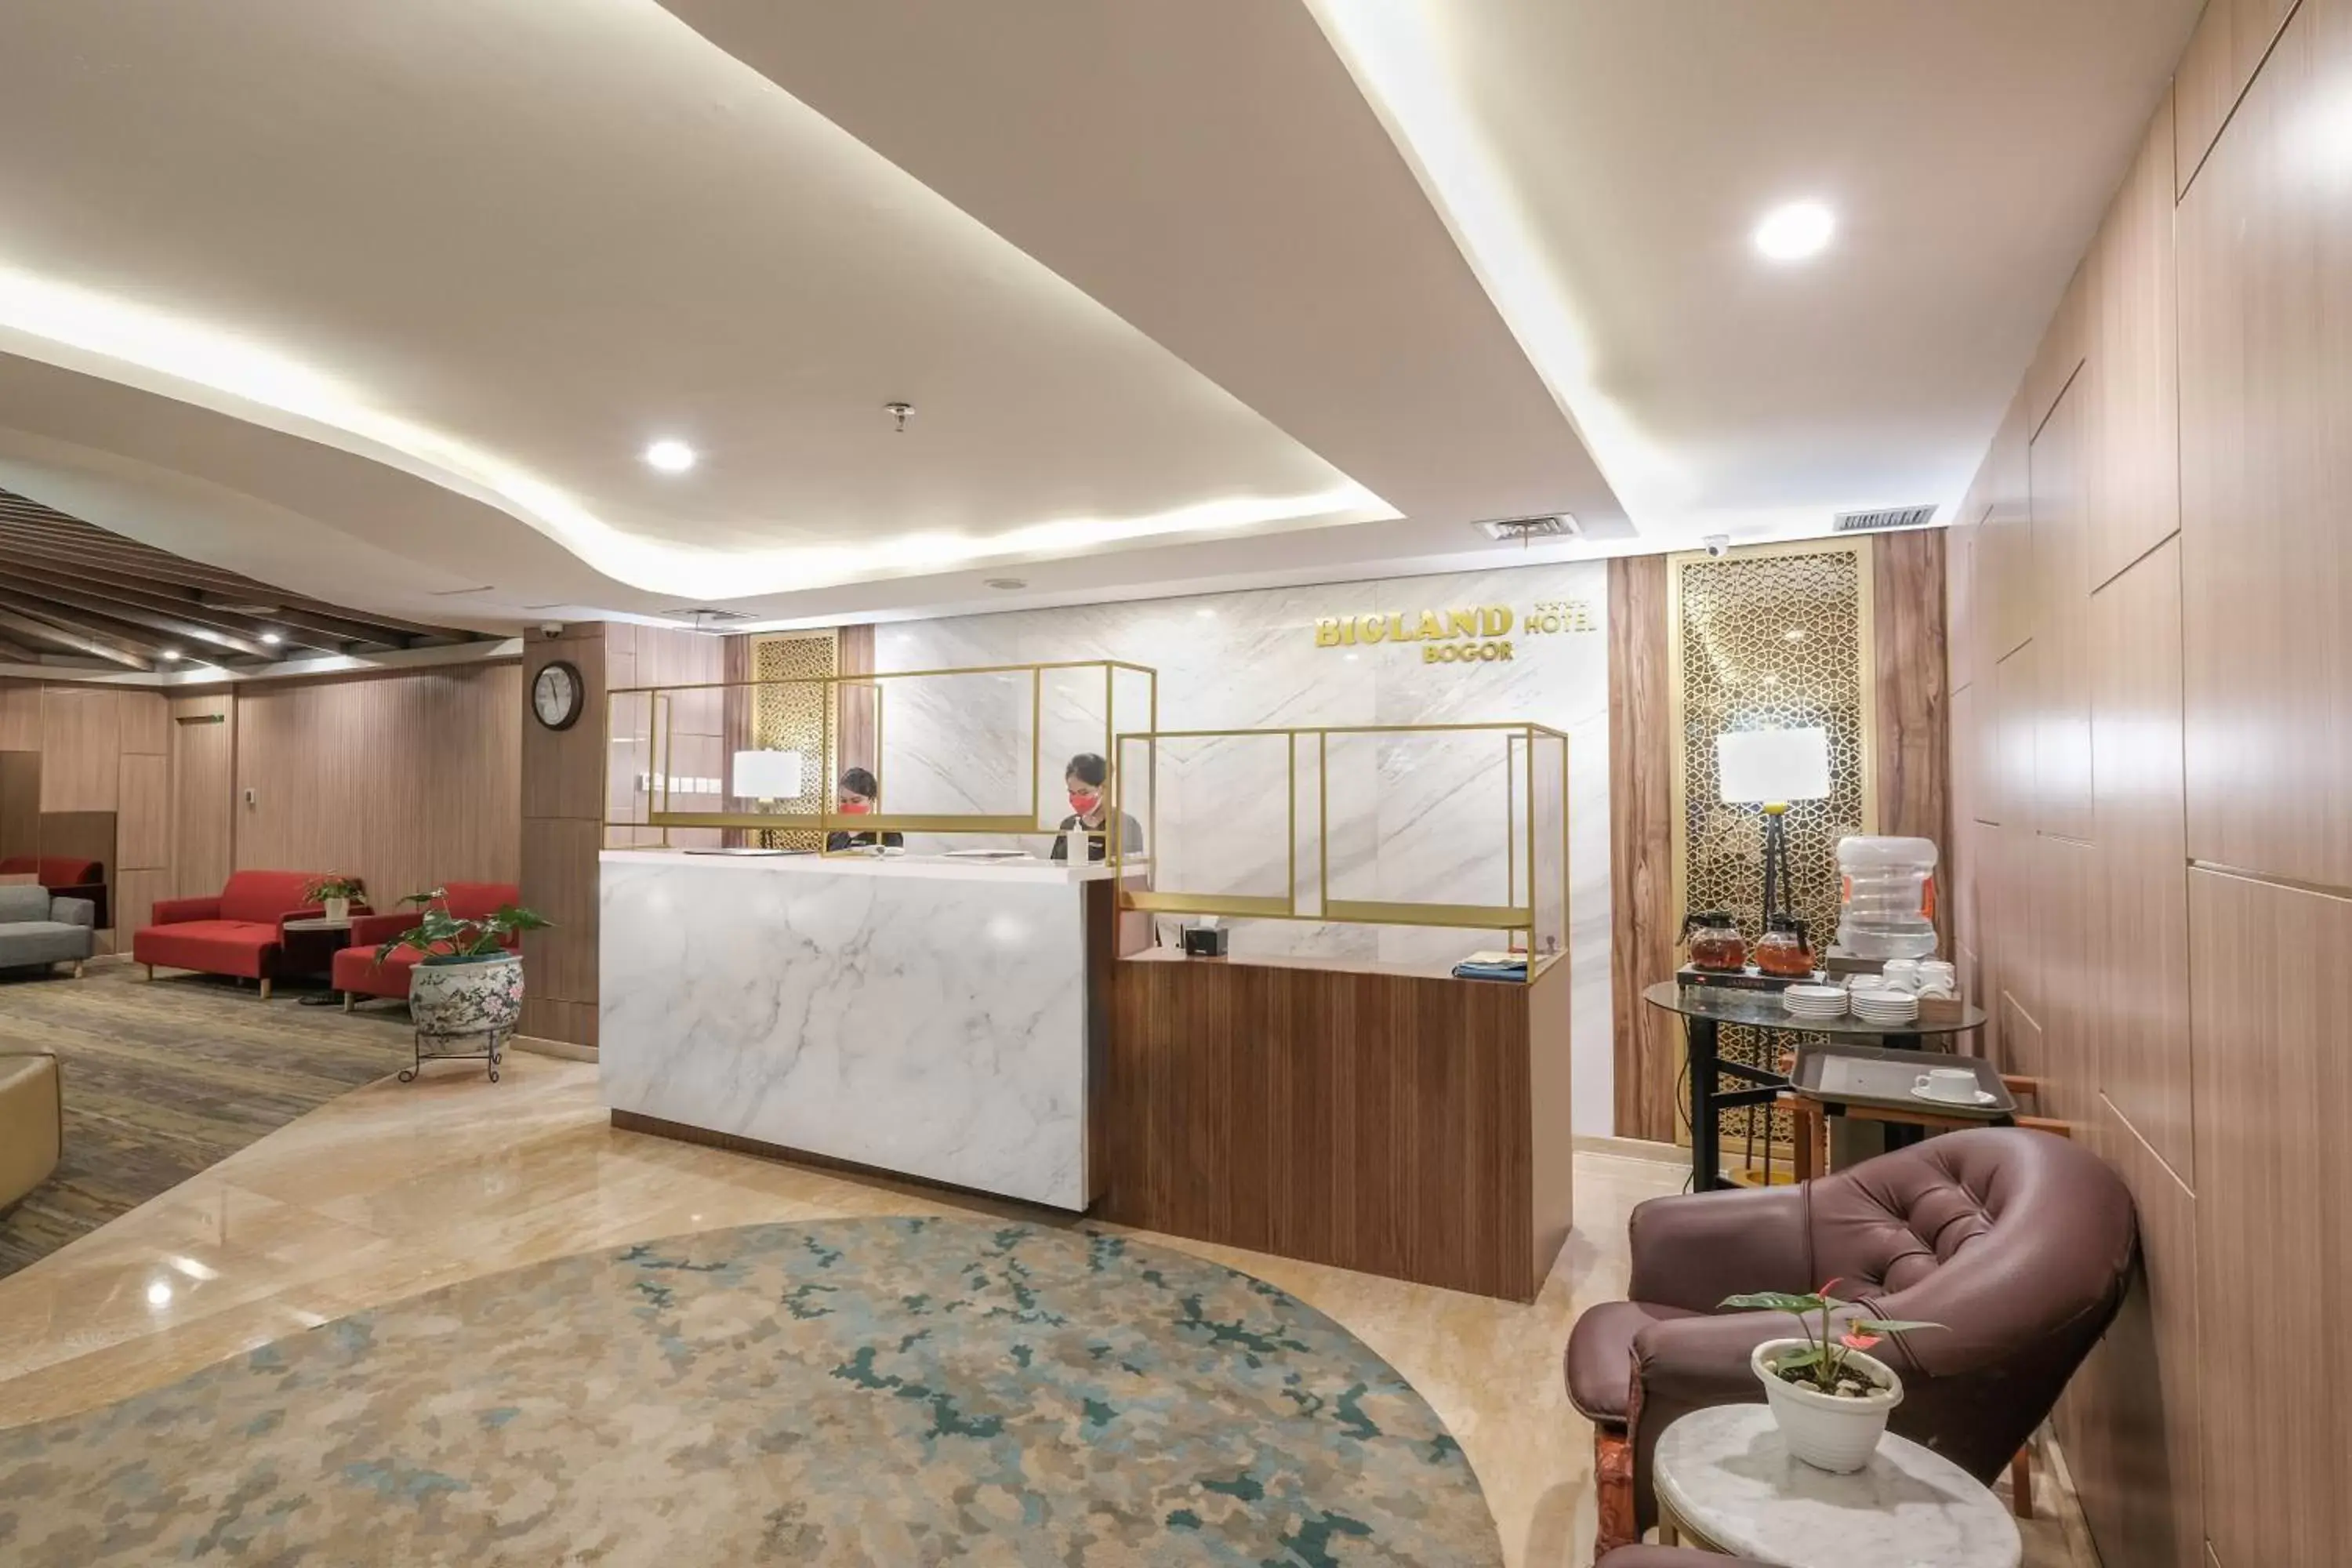 Lobby or reception, Lobby/Reception in Bigland Hotel Bogor